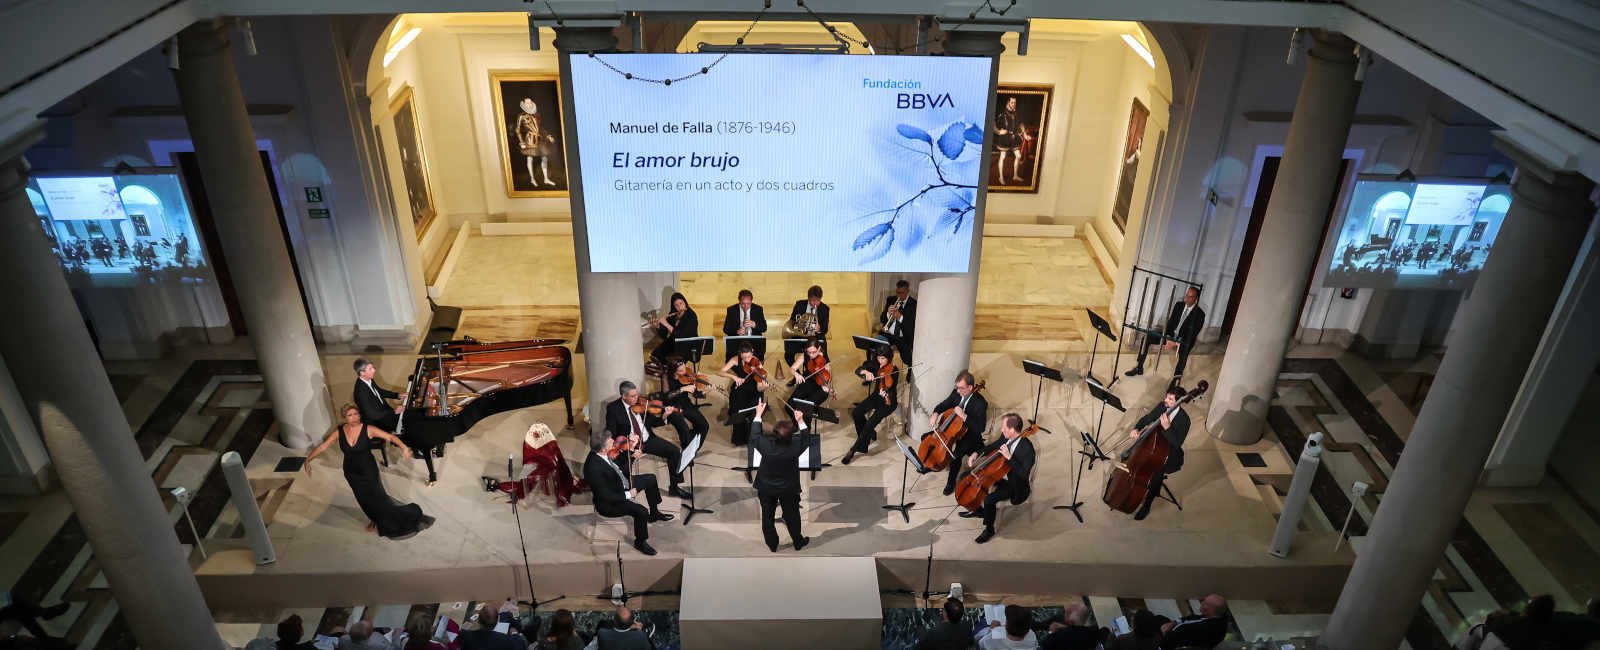 Concierto a cargo de la Orquesta de Cámara Andrés Segovia de temas de Manuel de Falla en la Fundación BBVA.